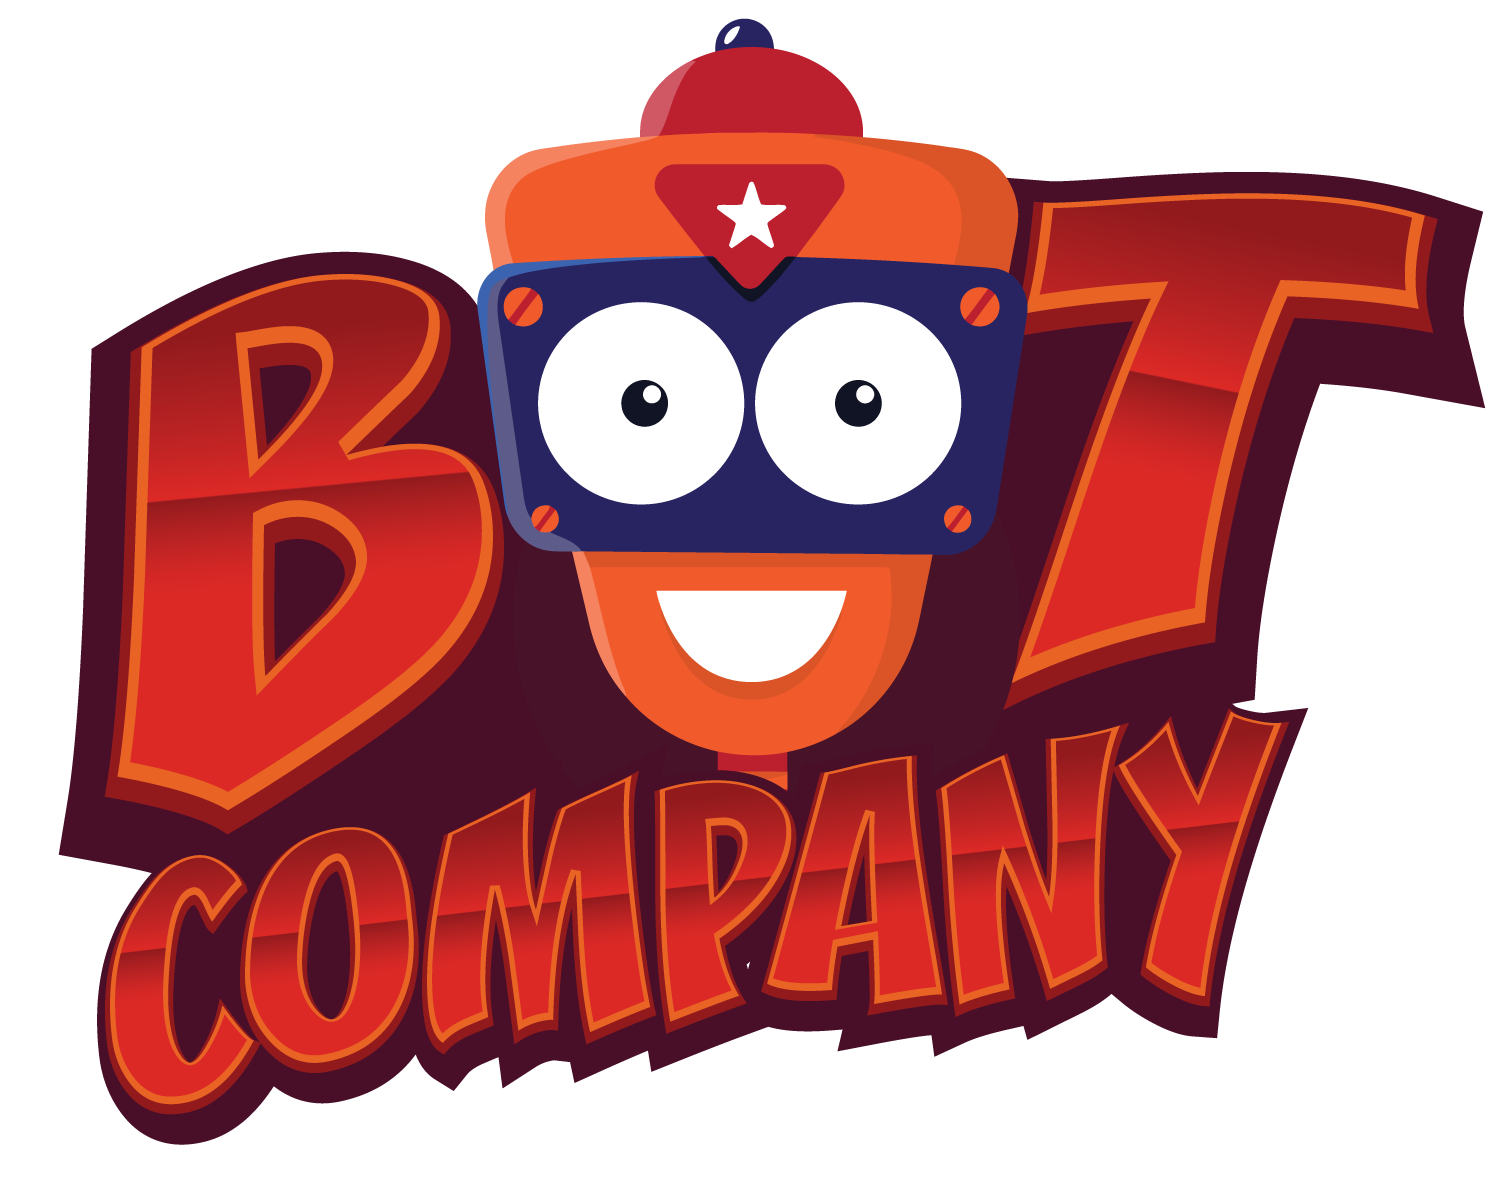 BotCompany [logo by sadietwiqs]